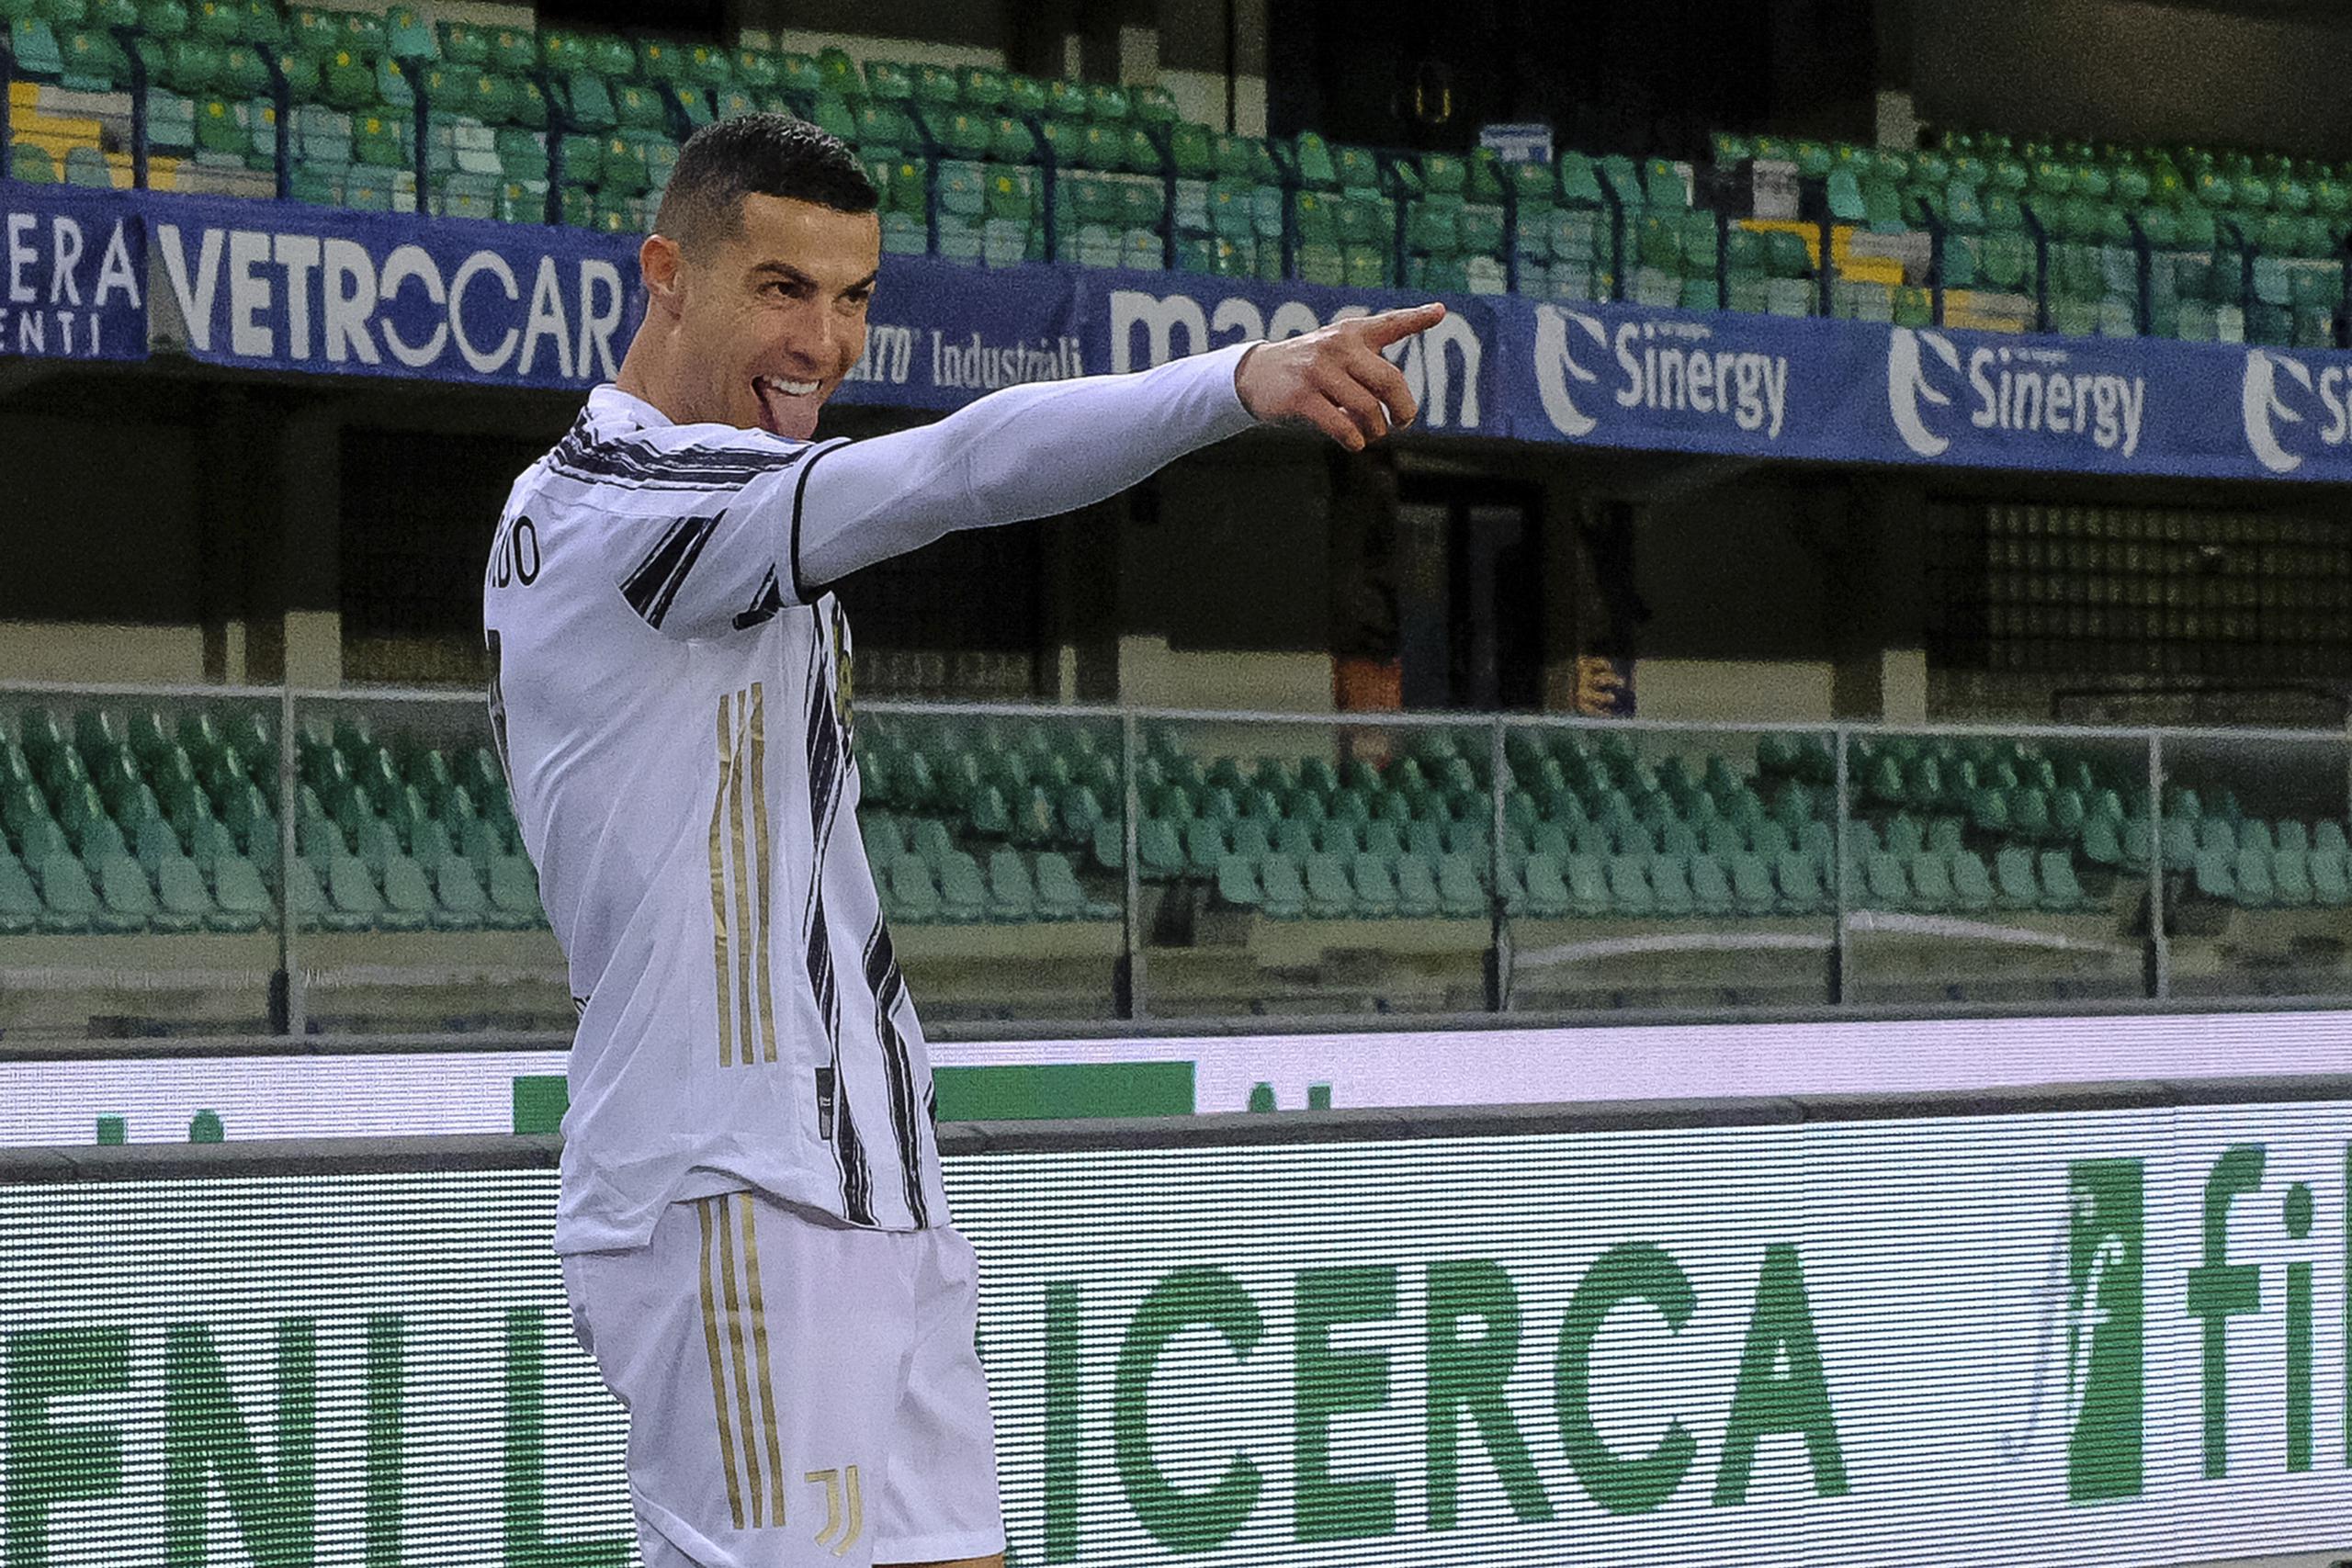 En esta imagen de archivo, Cristiano Ronaldo celebra un gol en un partido de la Serie A entre el Verona la Juventus en el estadio Bentegodi en Verona, Italia, el 27 de febrero de 2021.